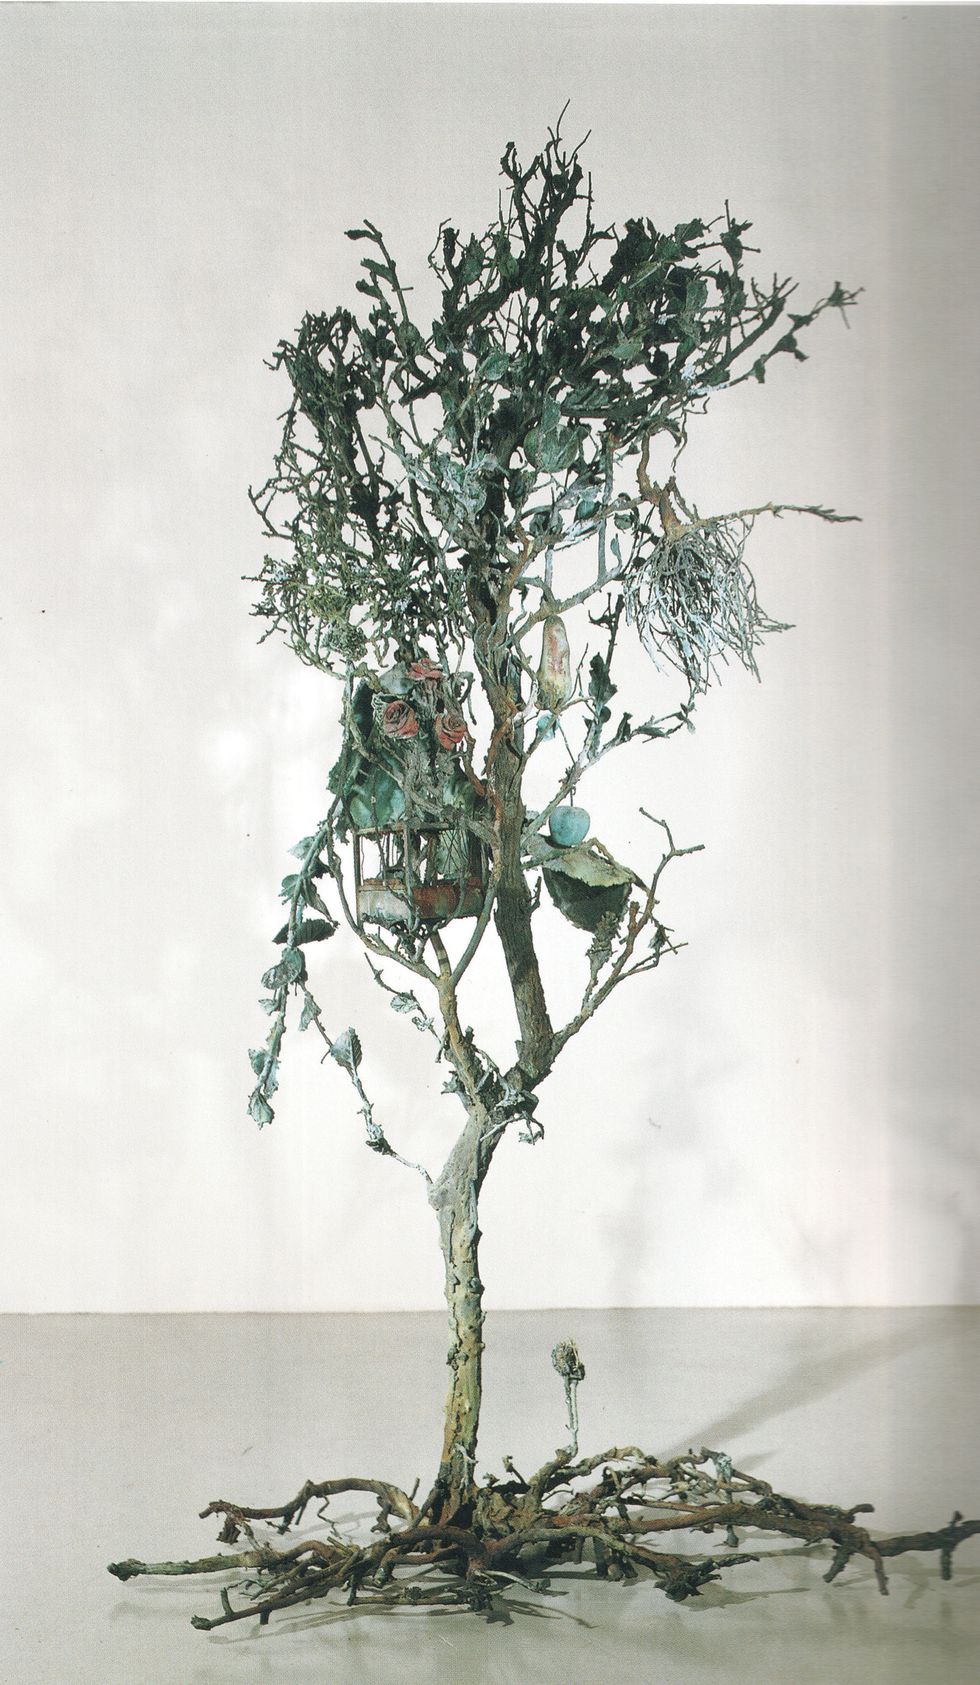 centro artistico alik cavaliere ﻿via e de amicis, 17 ﻿alik cavaliere, ﻿l'albero, ﻿19671979 ﻿bronzo, tecnica della cera persa